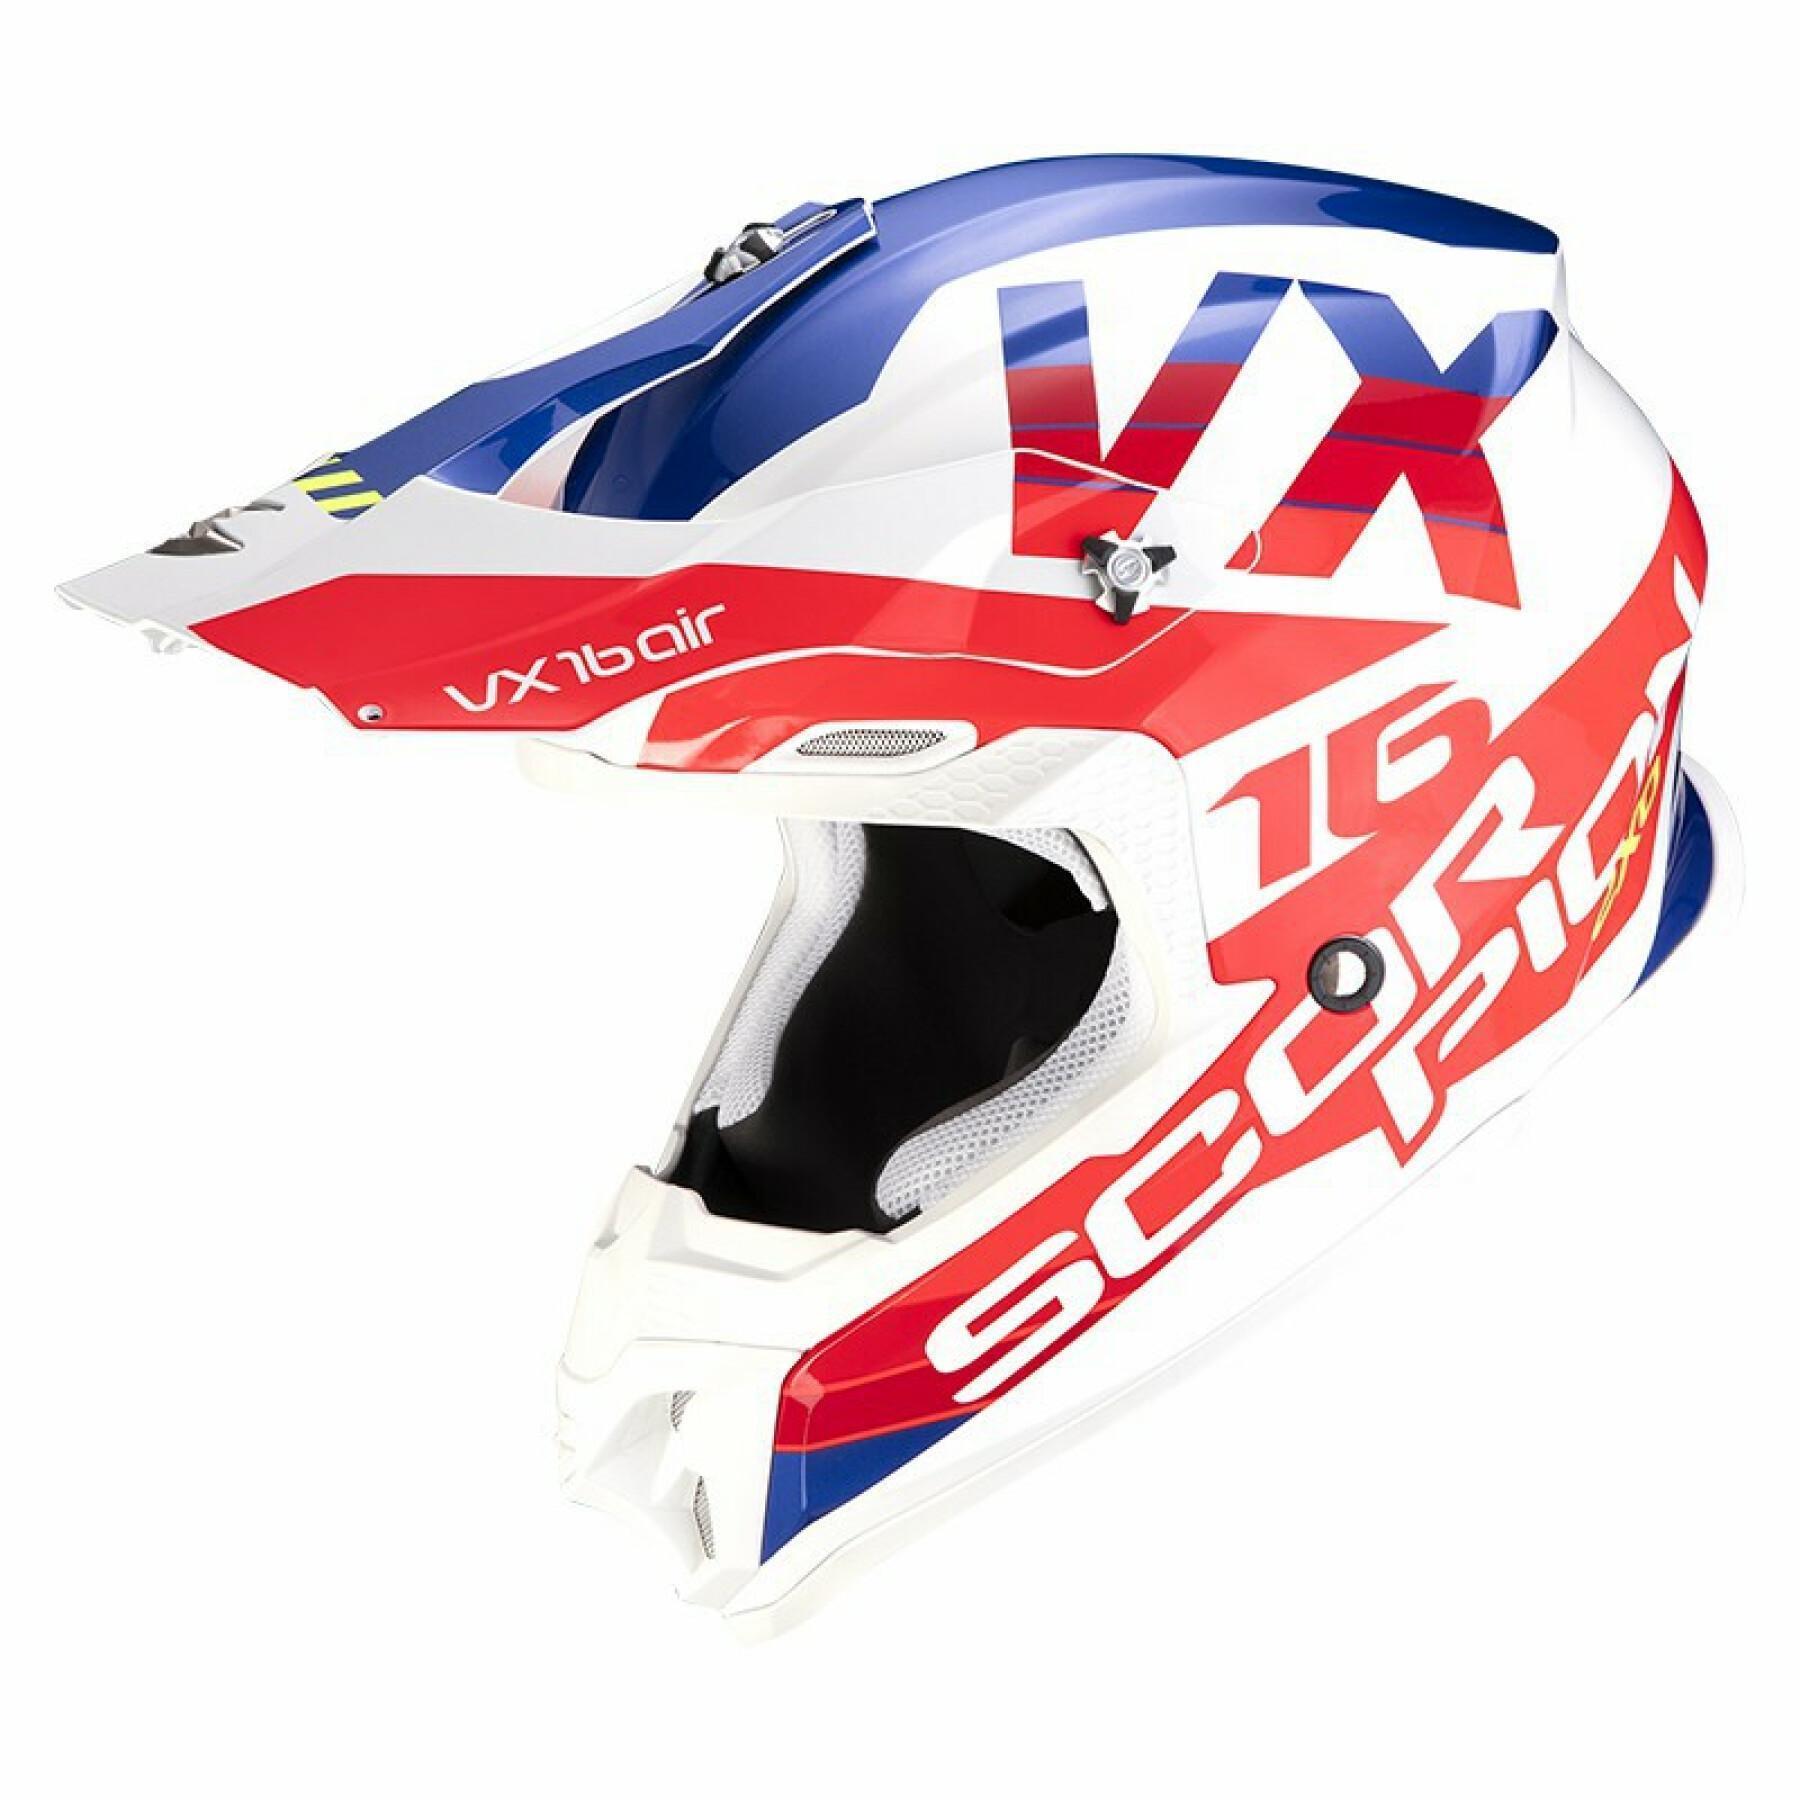 Cross helmet Scorpion VX-16 Air X-TURN